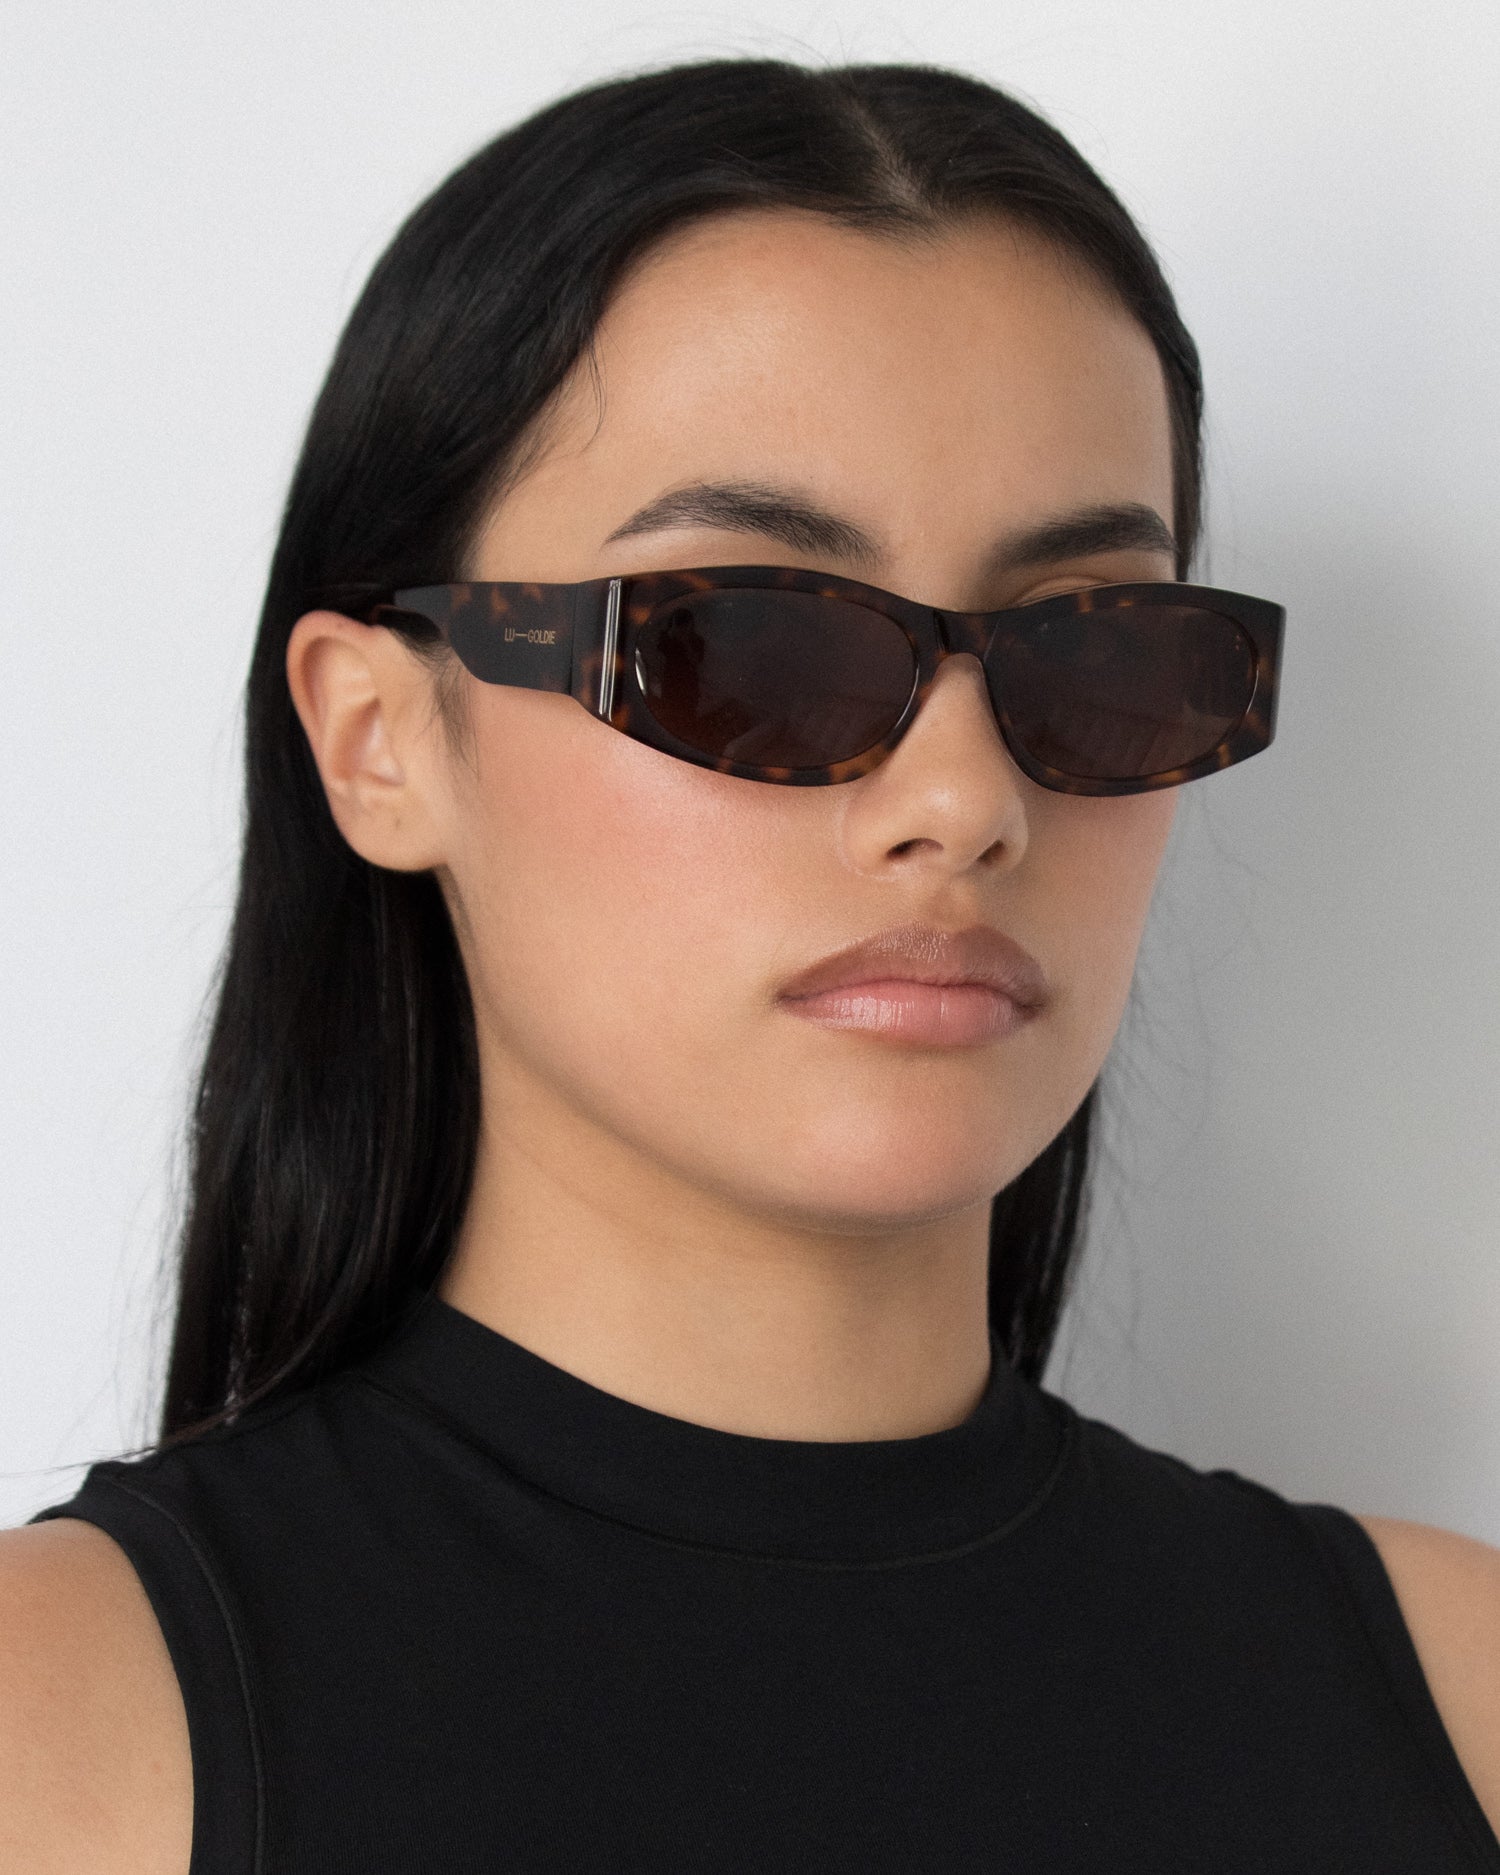 Romy Sunglasses in Tort by LU GOLDIE Eyewear